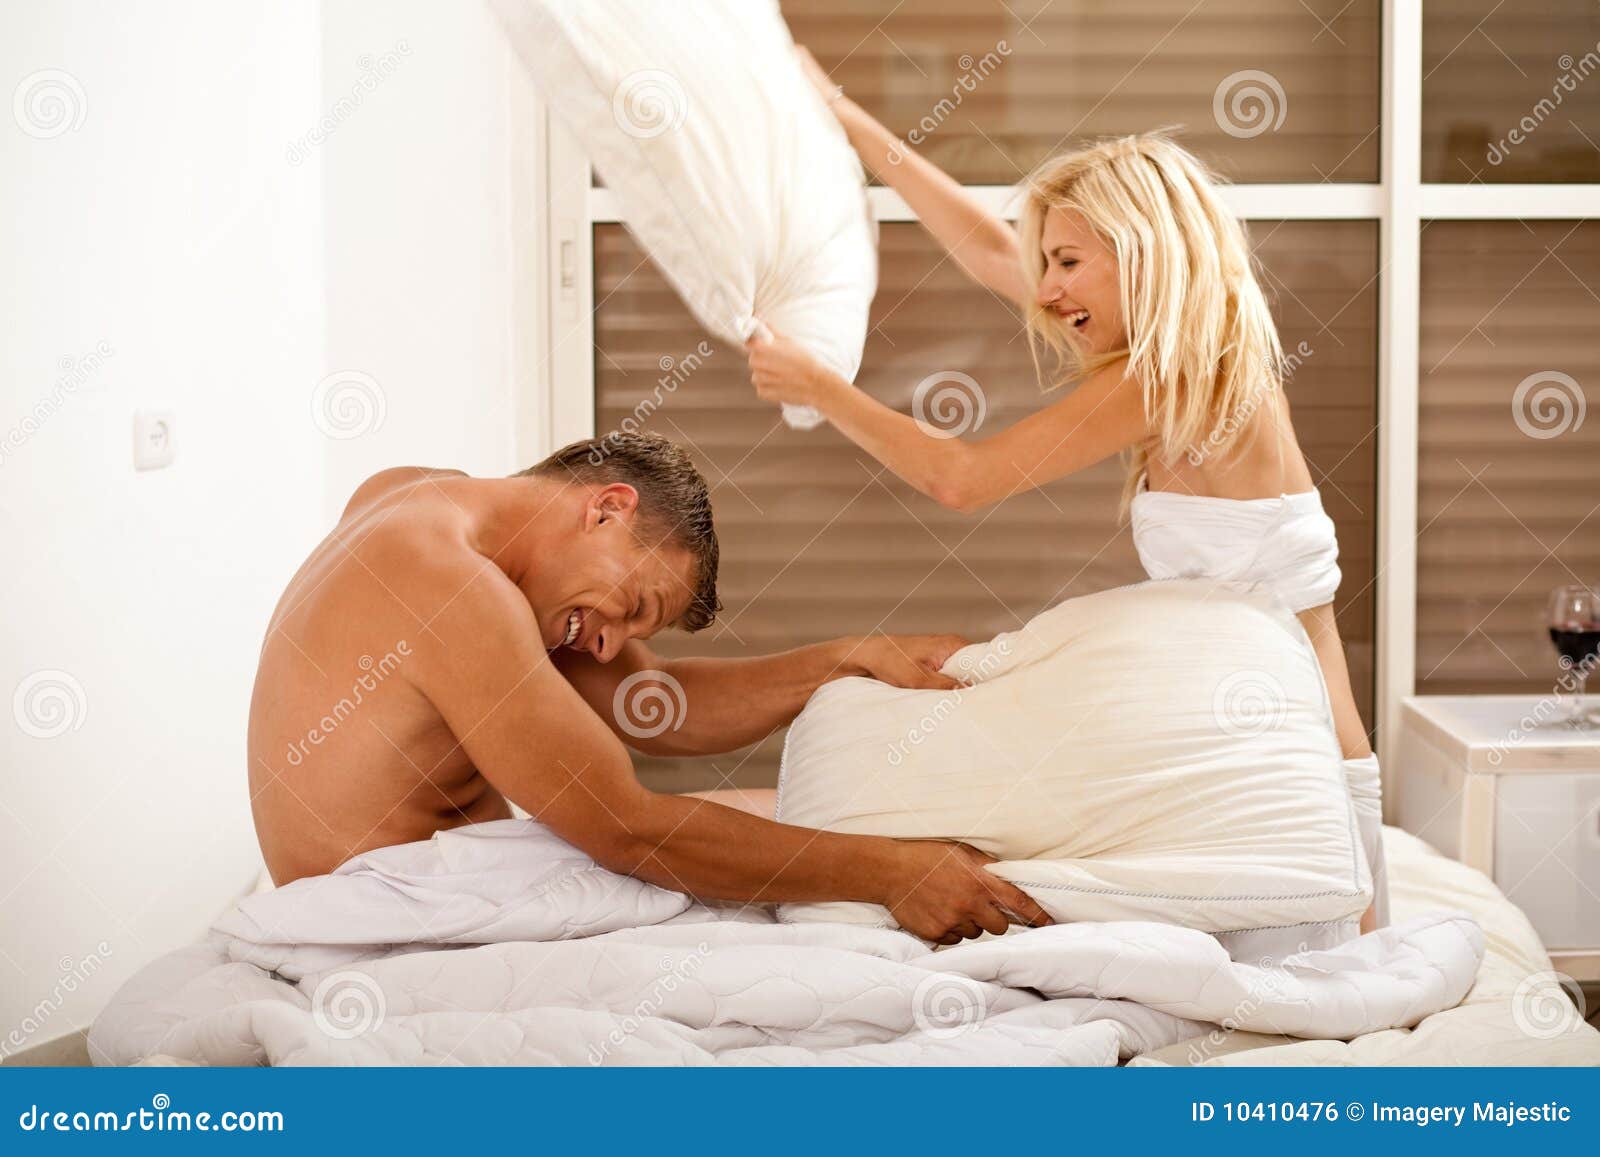 Мужик наказывает стройную блондинку в кровати